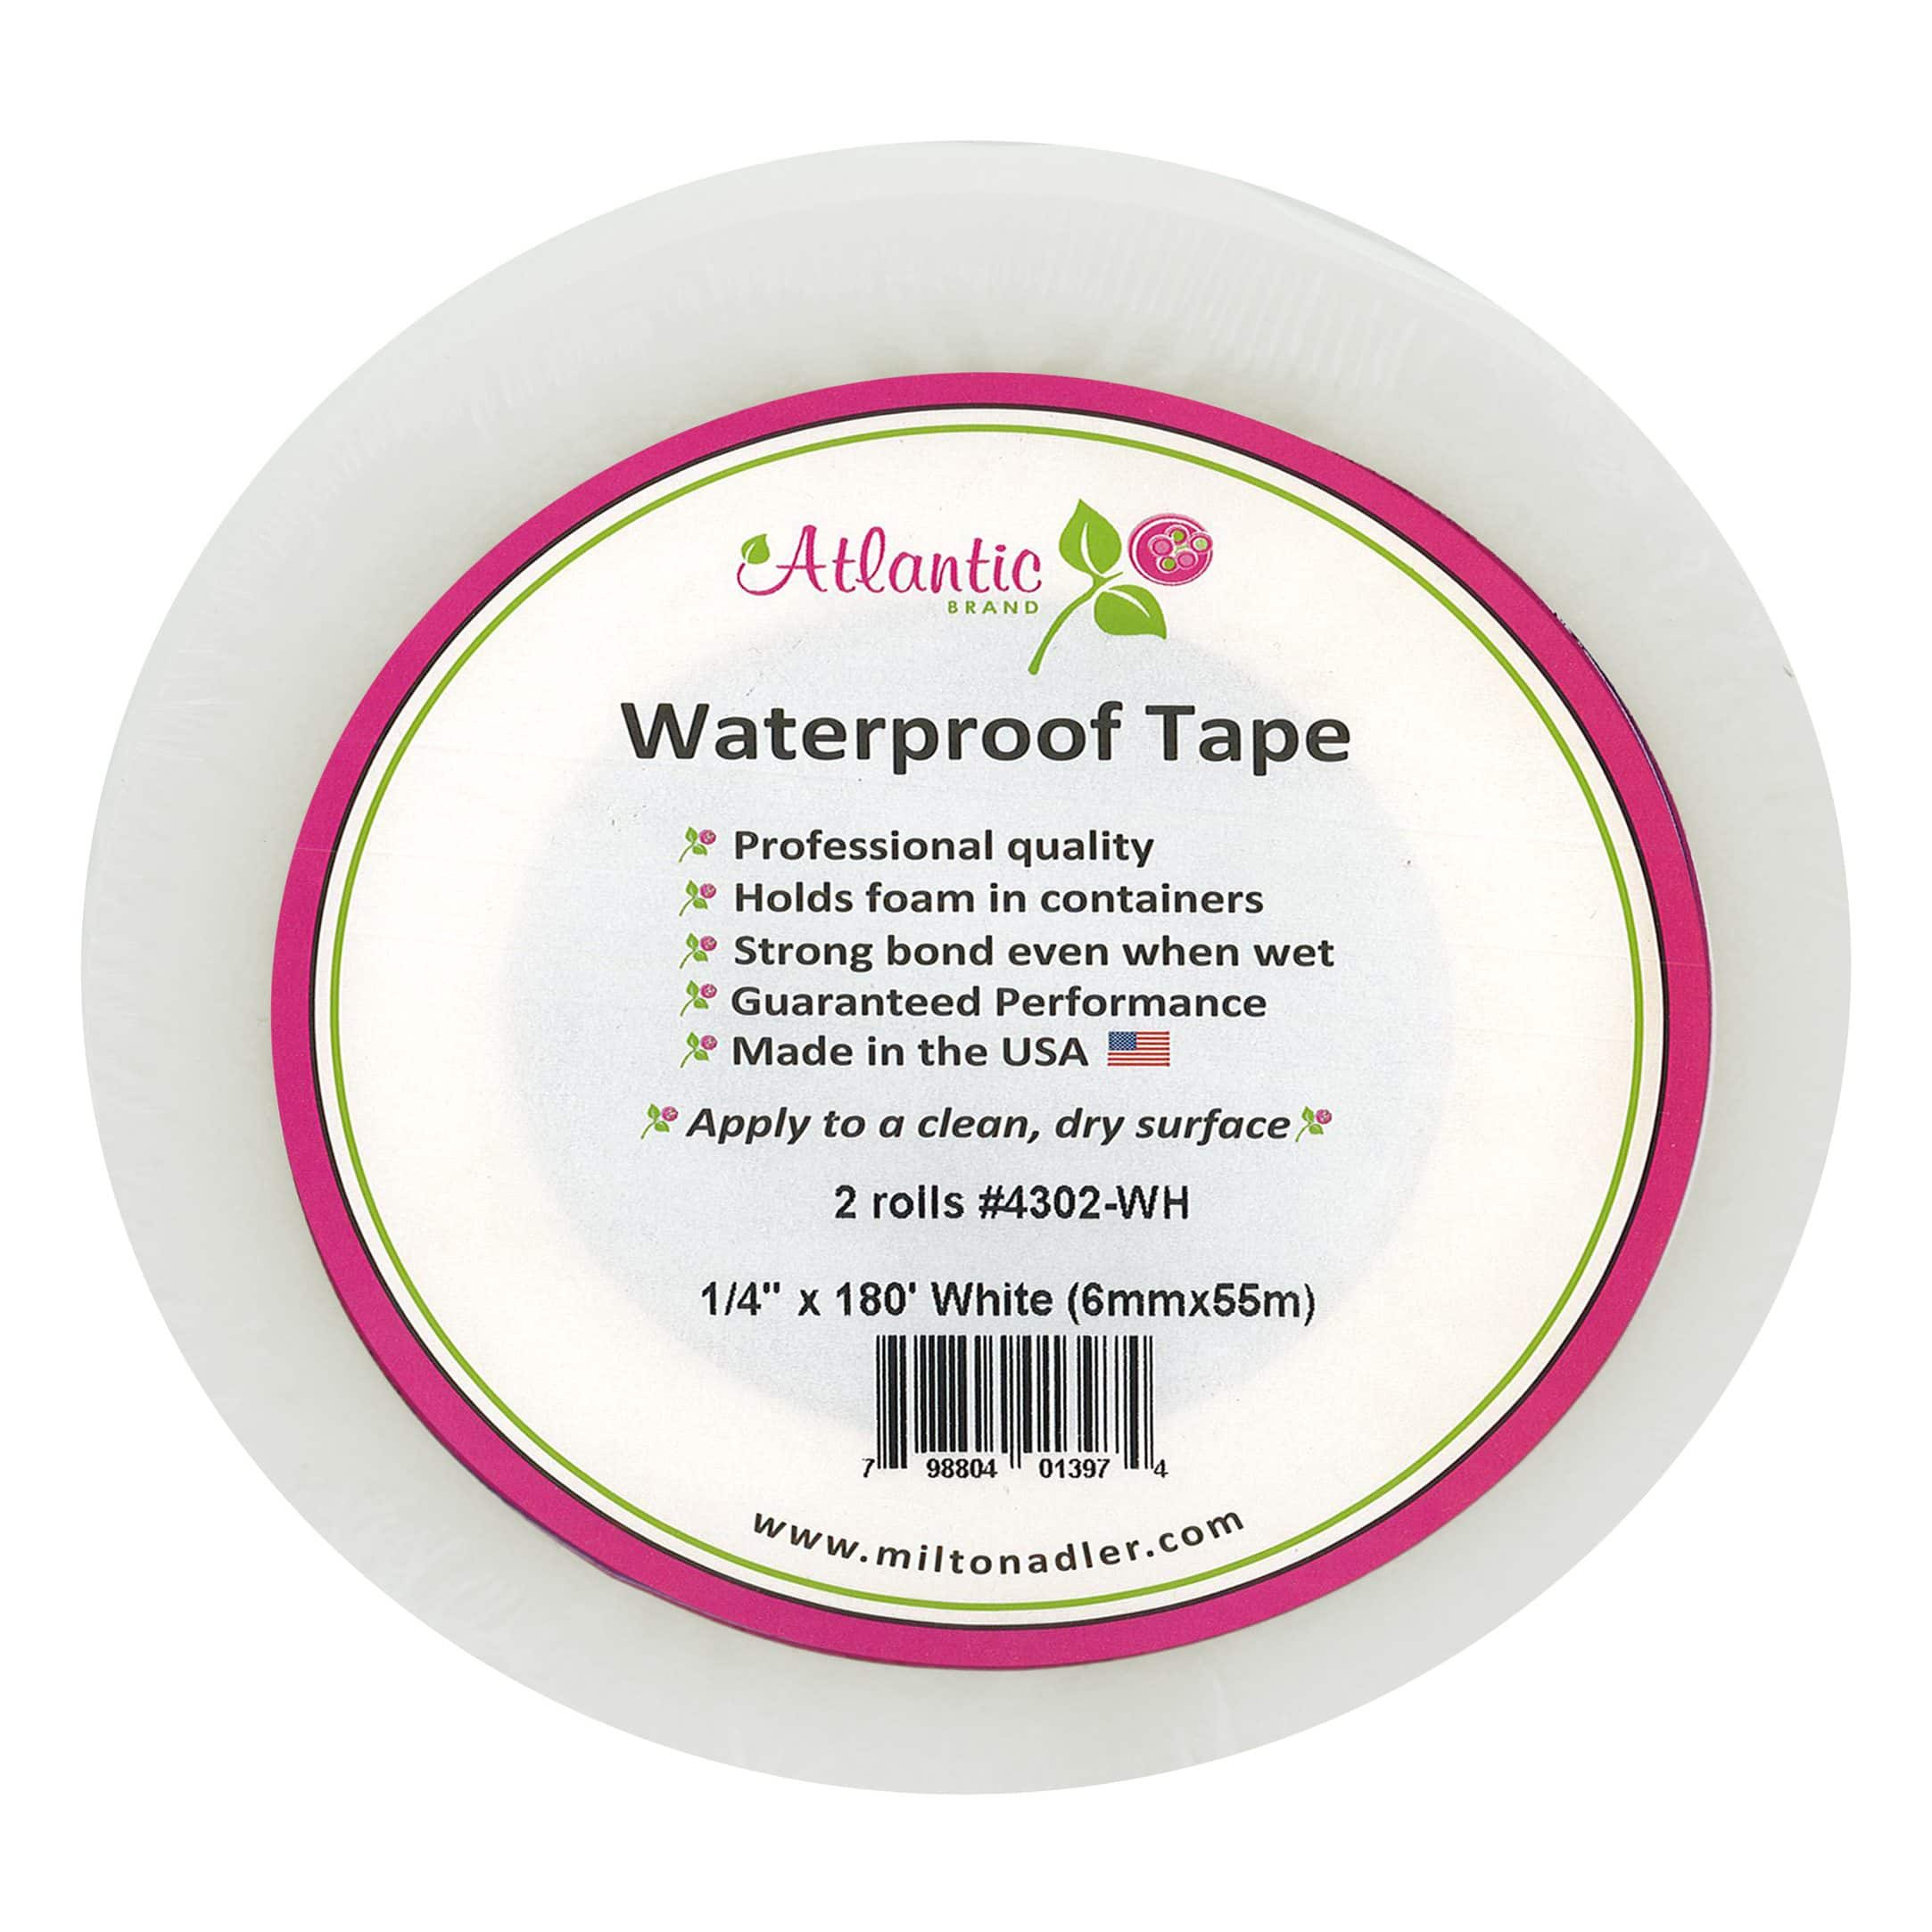 Atlantic&#xAE; Waterproof Floral Tape Rolls, 2ct.